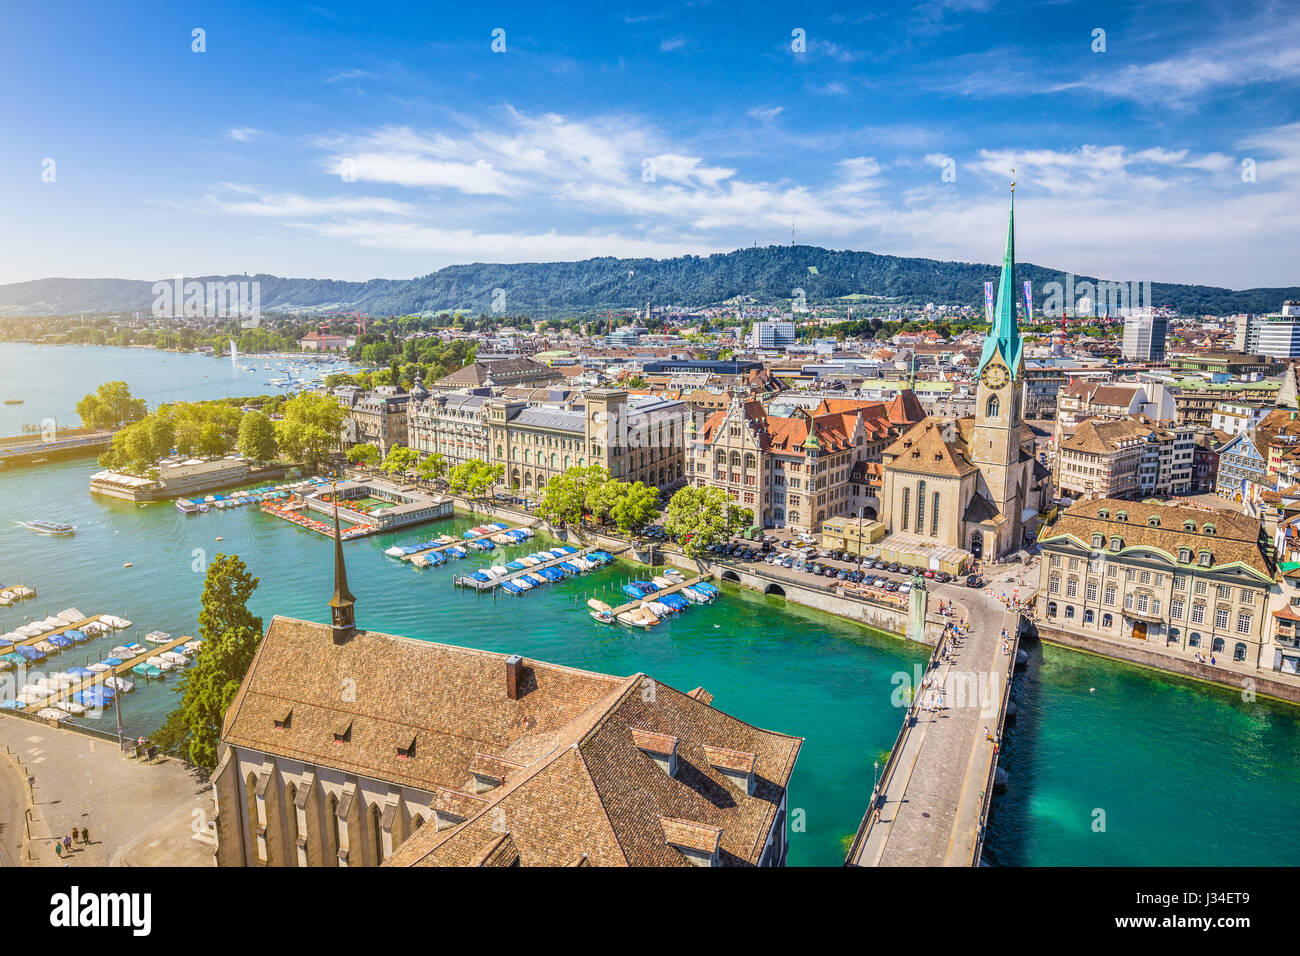 Vue aérienne du centre-ville de Zurich avec célèbre église Fraumunster et rivière Limmat au lac de Zurich à partir de l'Église Grossmunster, Zurich, Suisse Banque D'Images